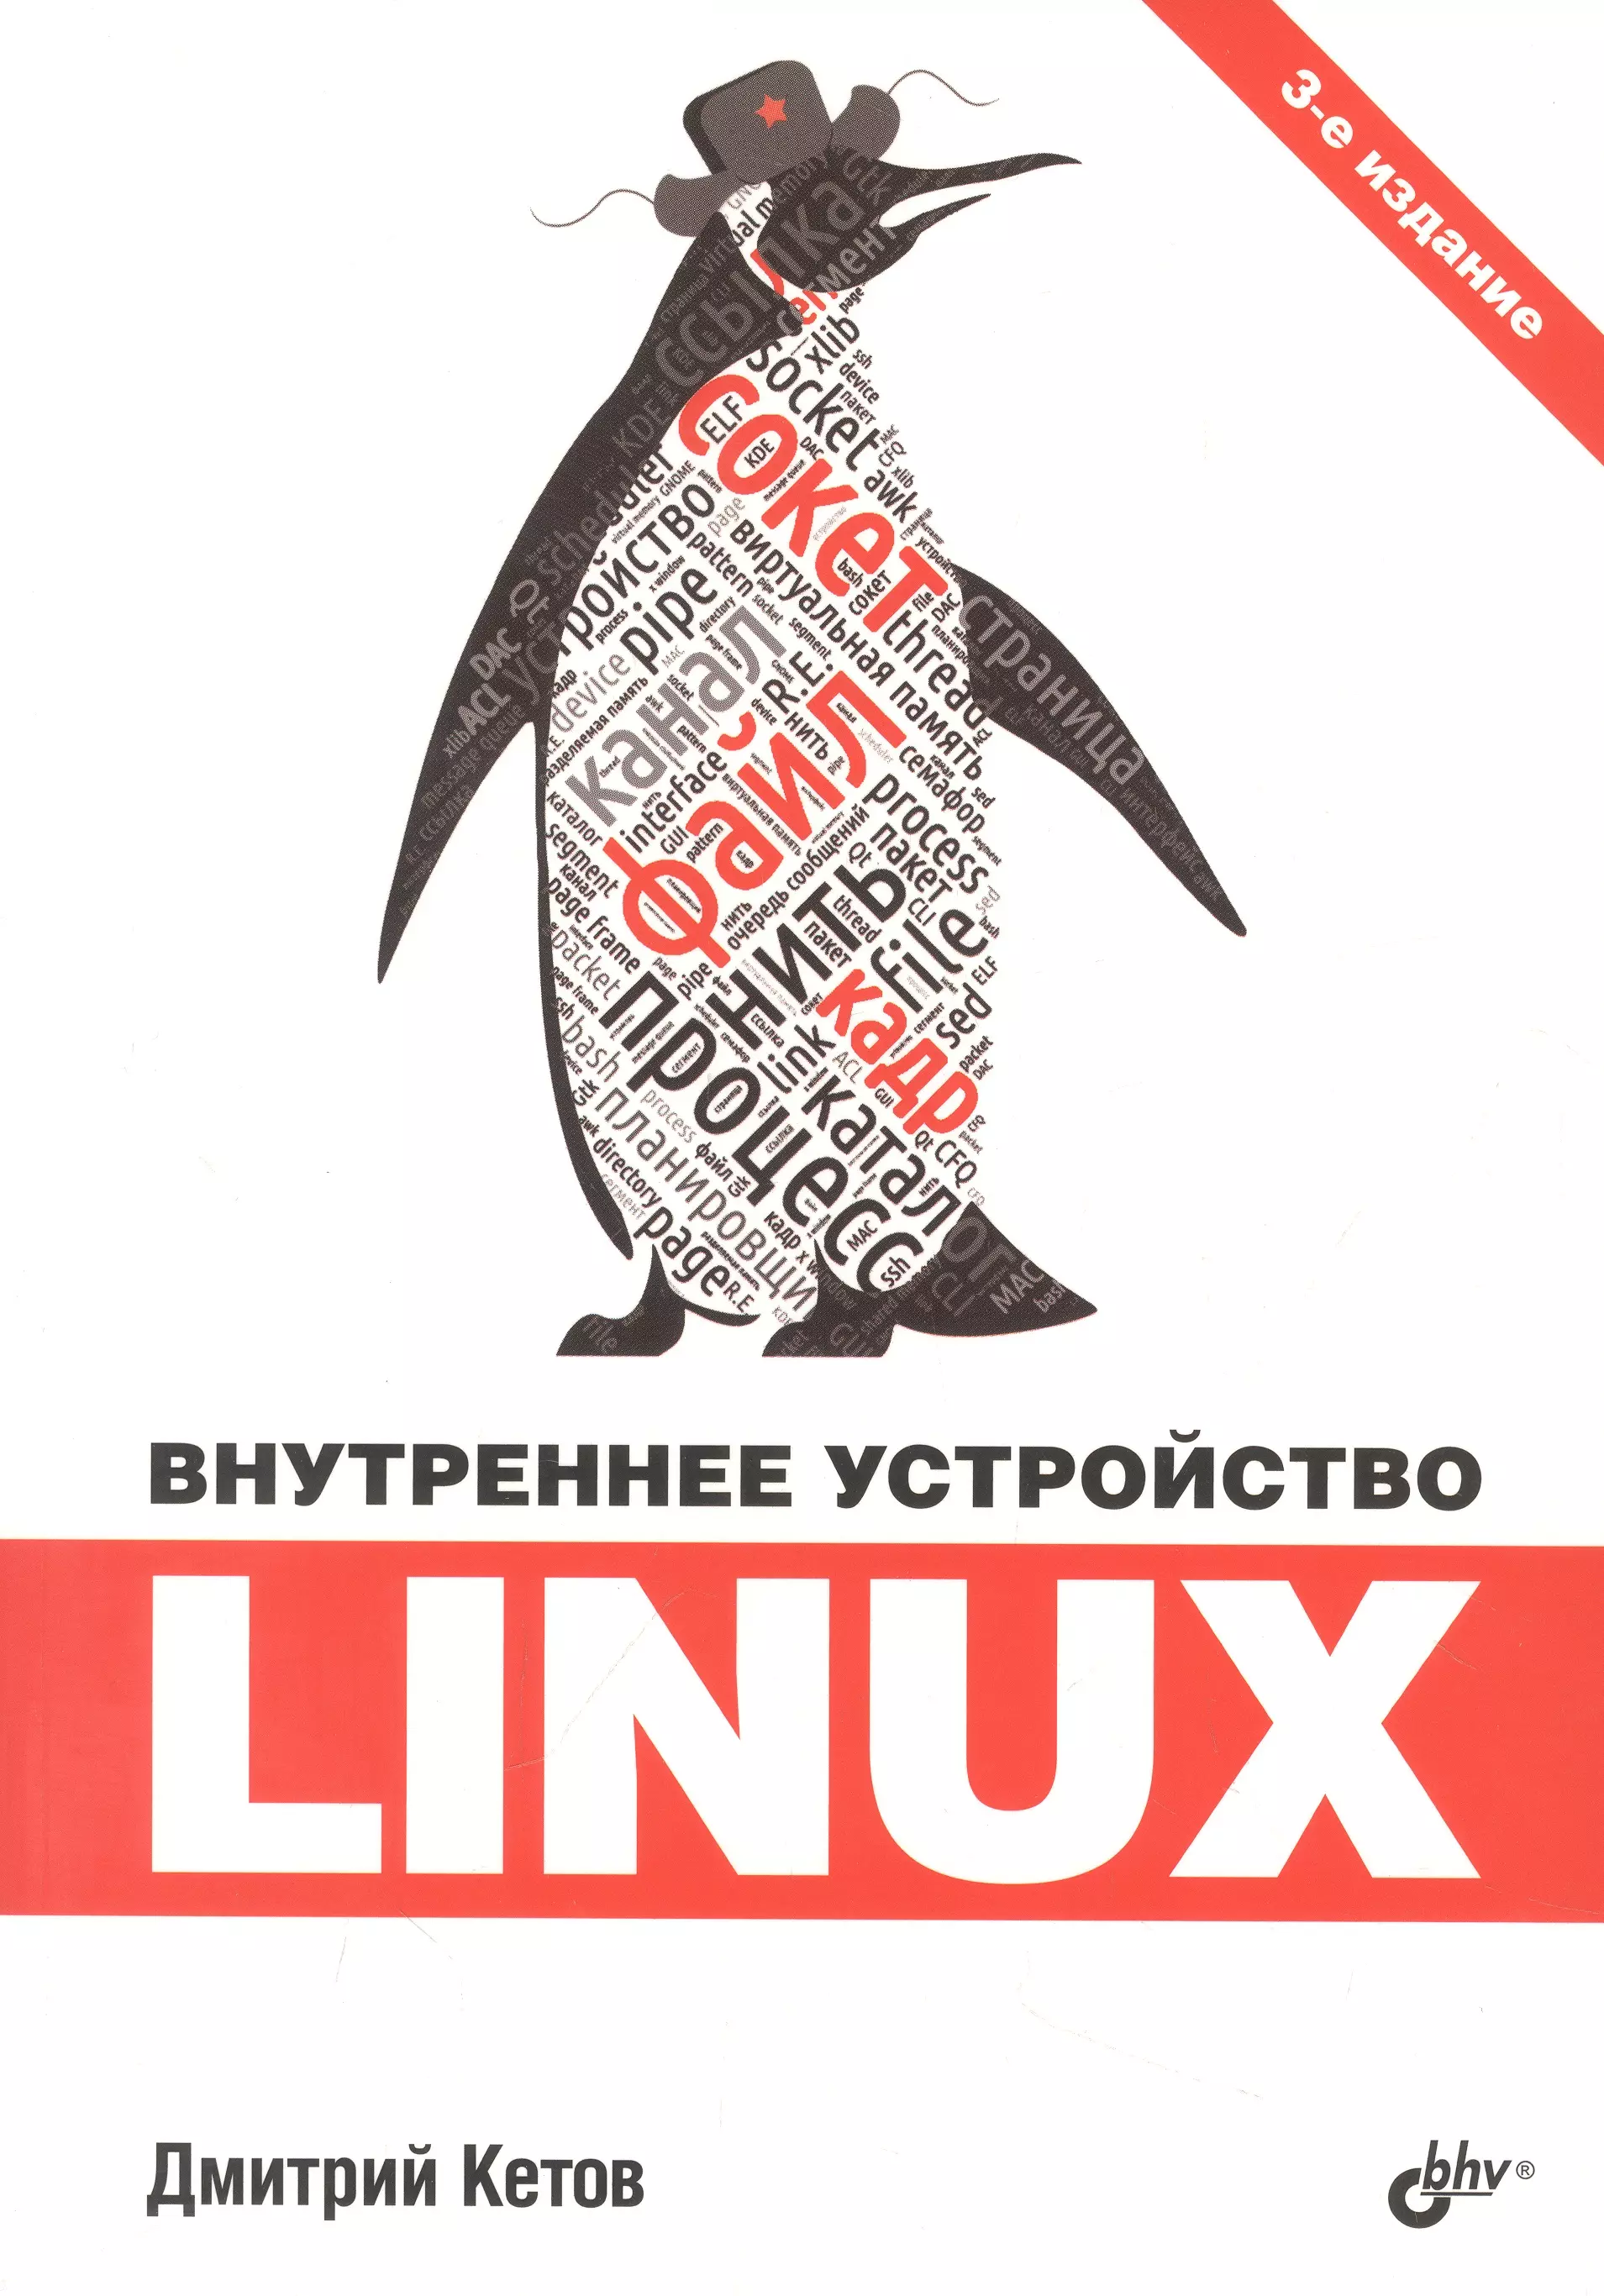 уорд б внутреннее устройство linux Внутреннее устройство Linux